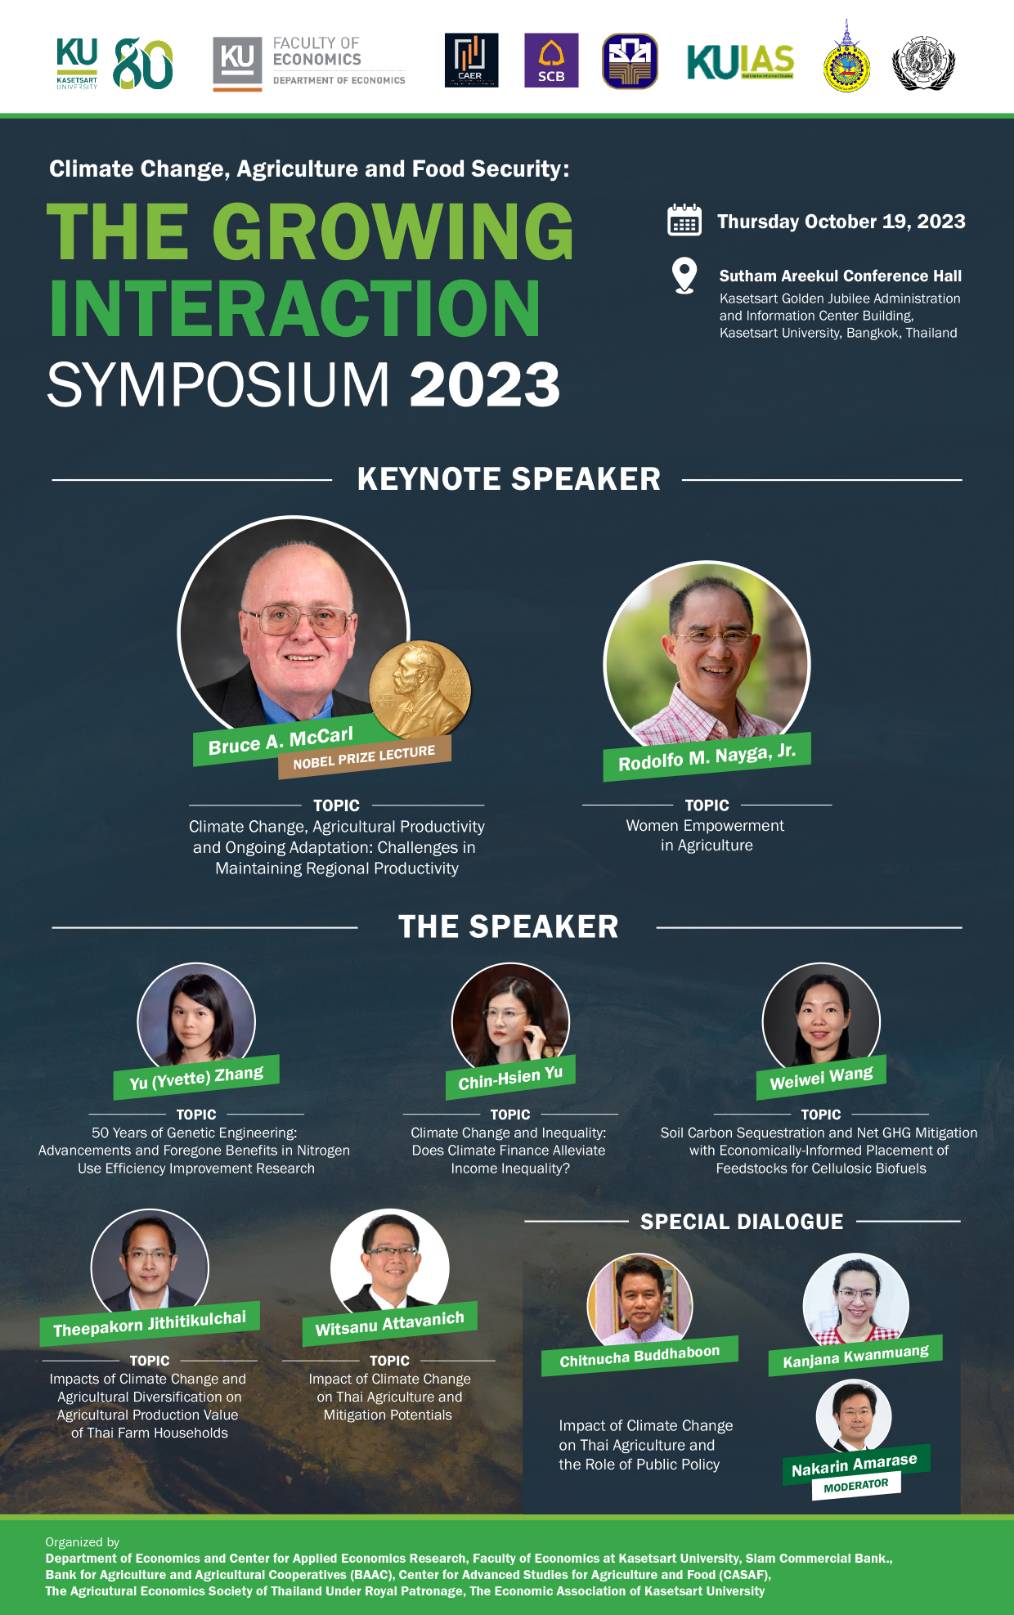 ขอเชิญเข้าร่วมงานสัมมนาวิชาการระดับนานาชาติ  “Climate  Change, Agriculture, and Food Security: The Growing Interaction Symposium 2023”  และรับฟังปาฐกถาพิเศษโดยนักเศรษฐศาสตร์รางวัลโนเบลด้านการเปลี่ยนแปลงสภาพภูมิอากาศและการเกษตร และประธานสมาคมเศรษฐศาสตร์เกษตรและเศรษฐศาสตร์ประยุกต์ (AAEA) รับฟังการเสวนาพิเศษด้านนโยบายเกษตรโดยผู้แทนจากกระทรวงเกษตรและสหกรณ์ และการนำเสนอผลงานวิจัยของนักเศรษฐศาสตร์เกษตรและสิ่งแวดล้อม  ในวันพฤหัสบดีที่ 19 ตุลาคม 2566 เวลา 9.00 น. ถึง 16.30 น.  ณ ห้องประชุมสุธรรม อารีกุล อาคารสารนิเทศ 50 ปี มหาวิทยาลัยเกษตรศาสตร์